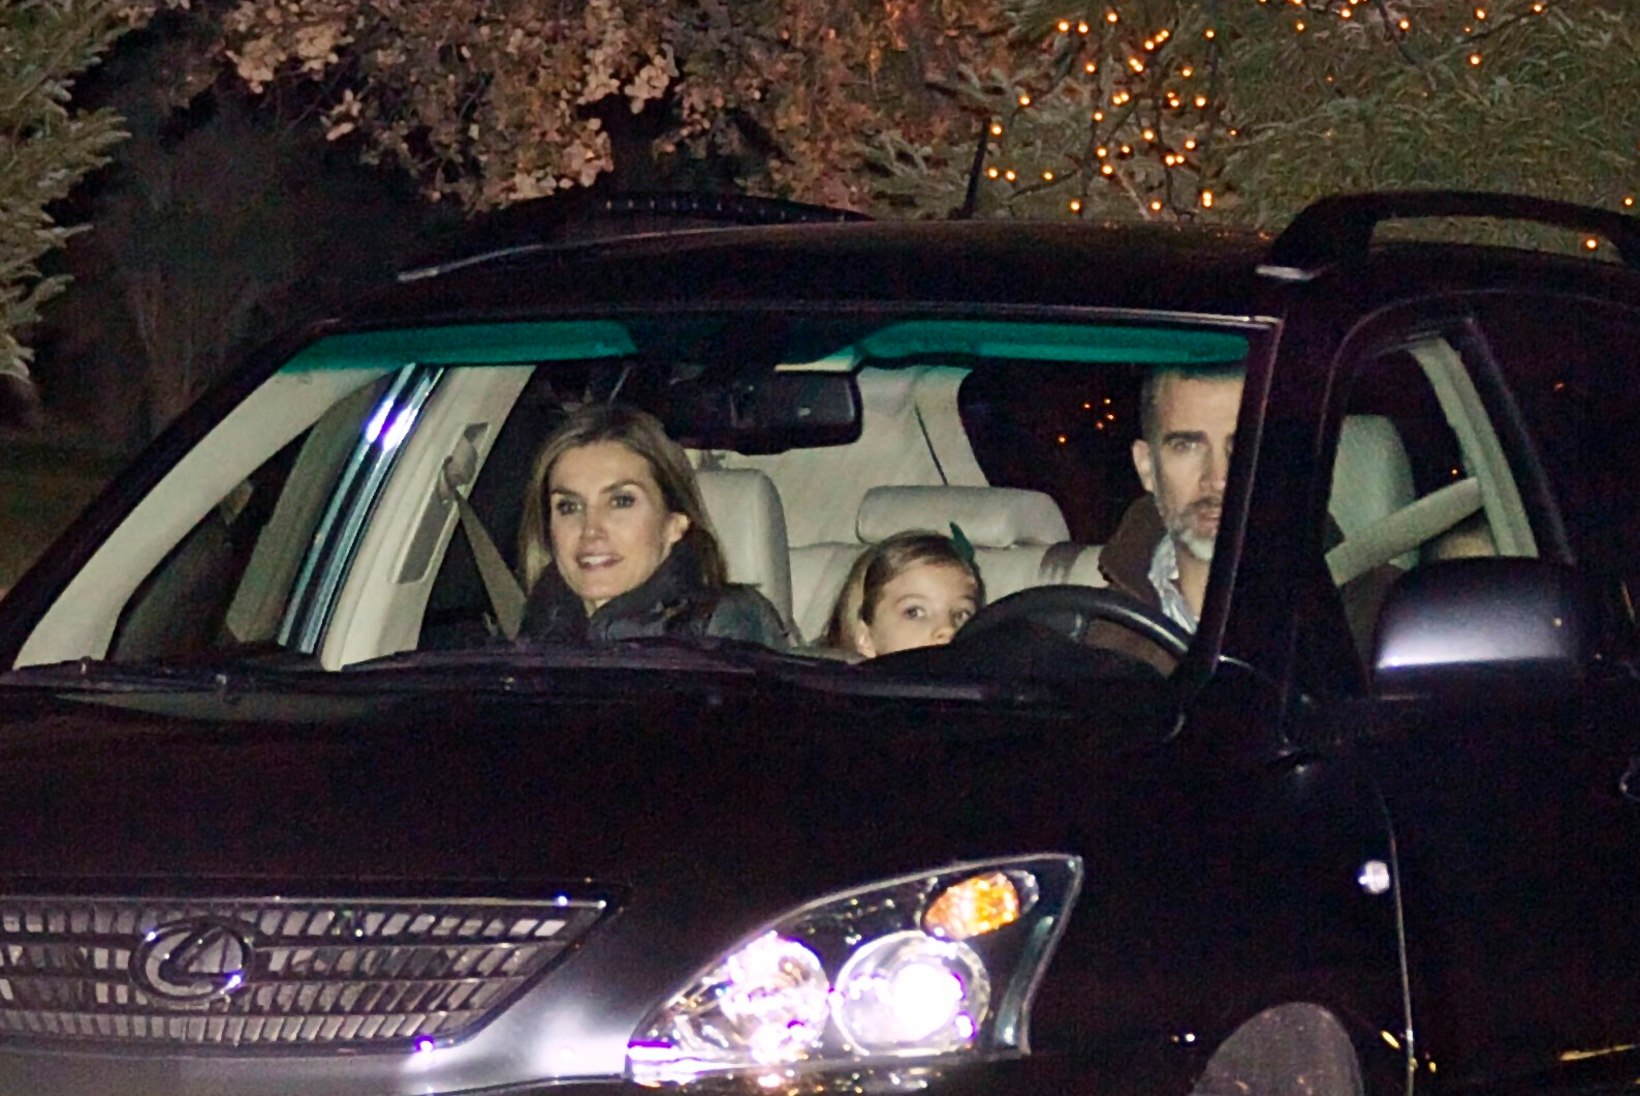 FOTOD: ei mingeid sohvreid! Hispaania kuningas sõidutas oma pere vanaisa juurde ise